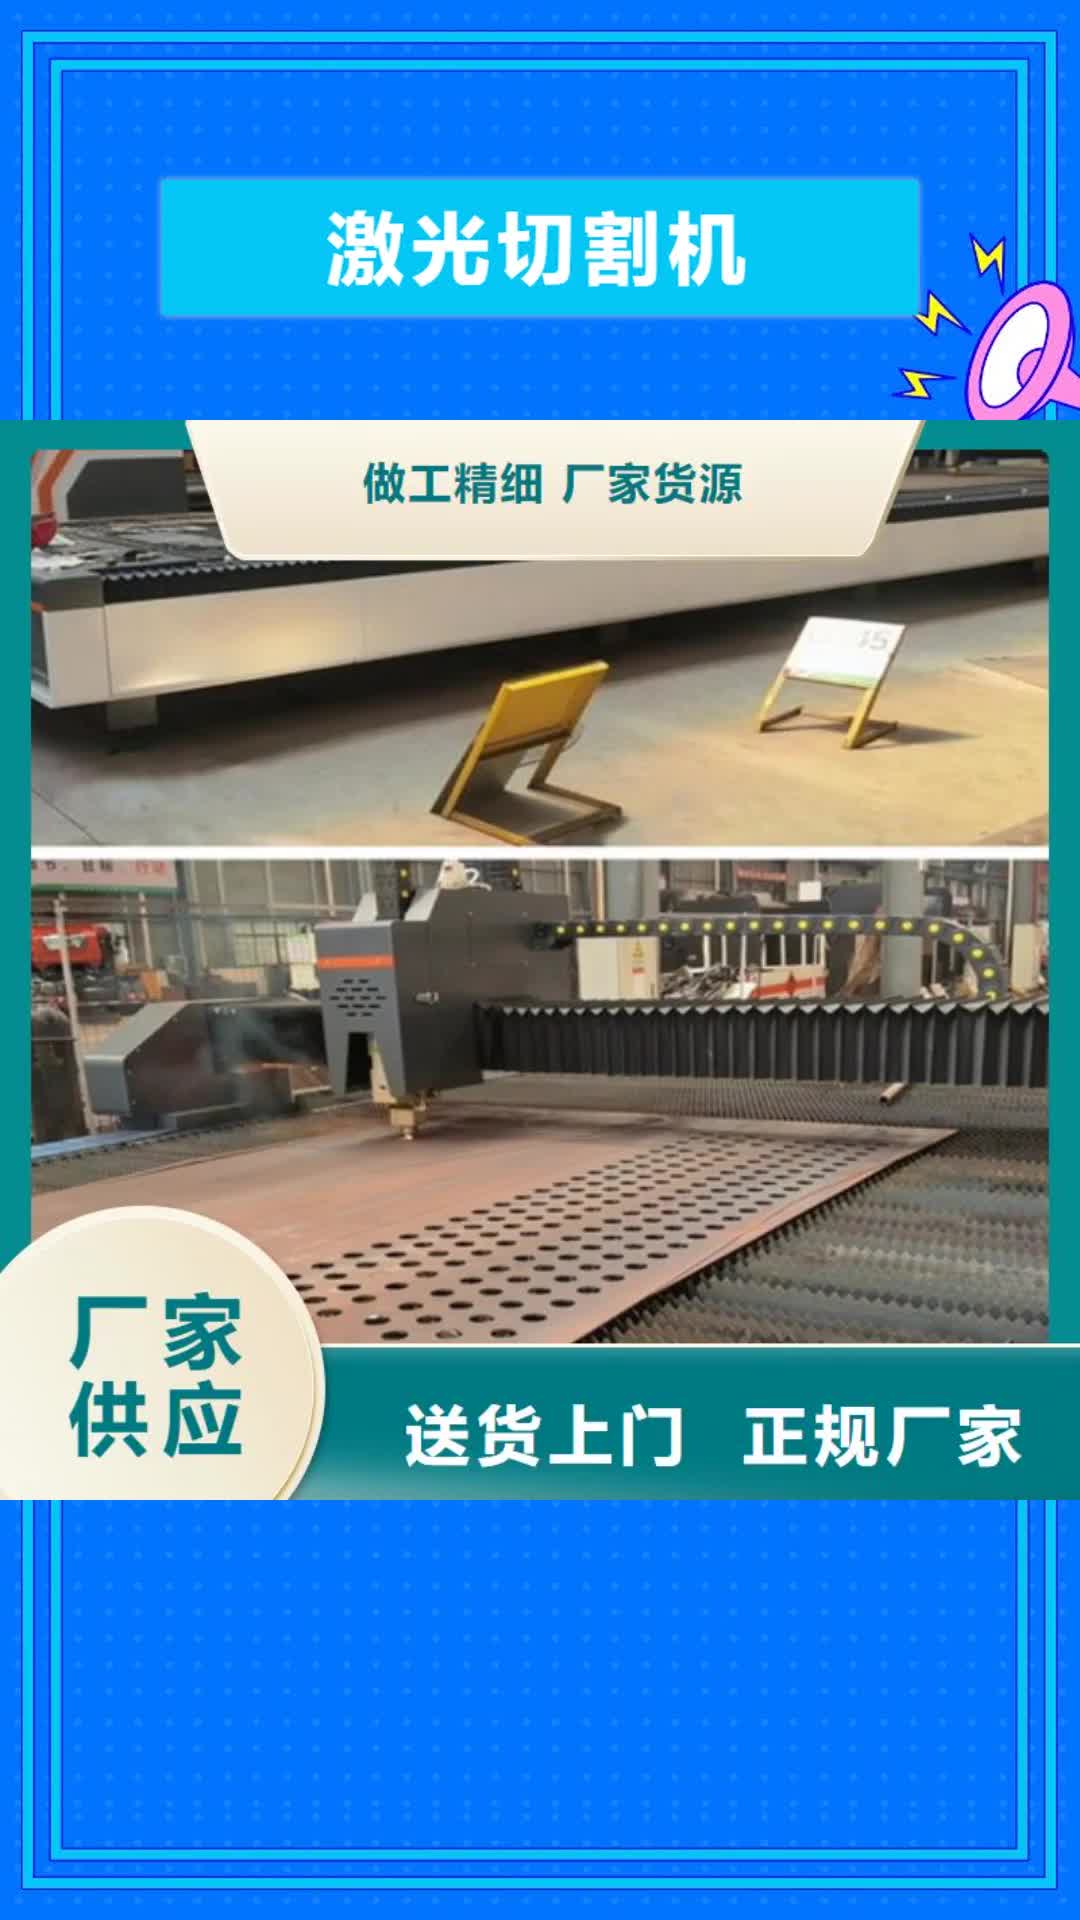 【北京 激光切割机-光纤金属激光切割机报价生产厂家】